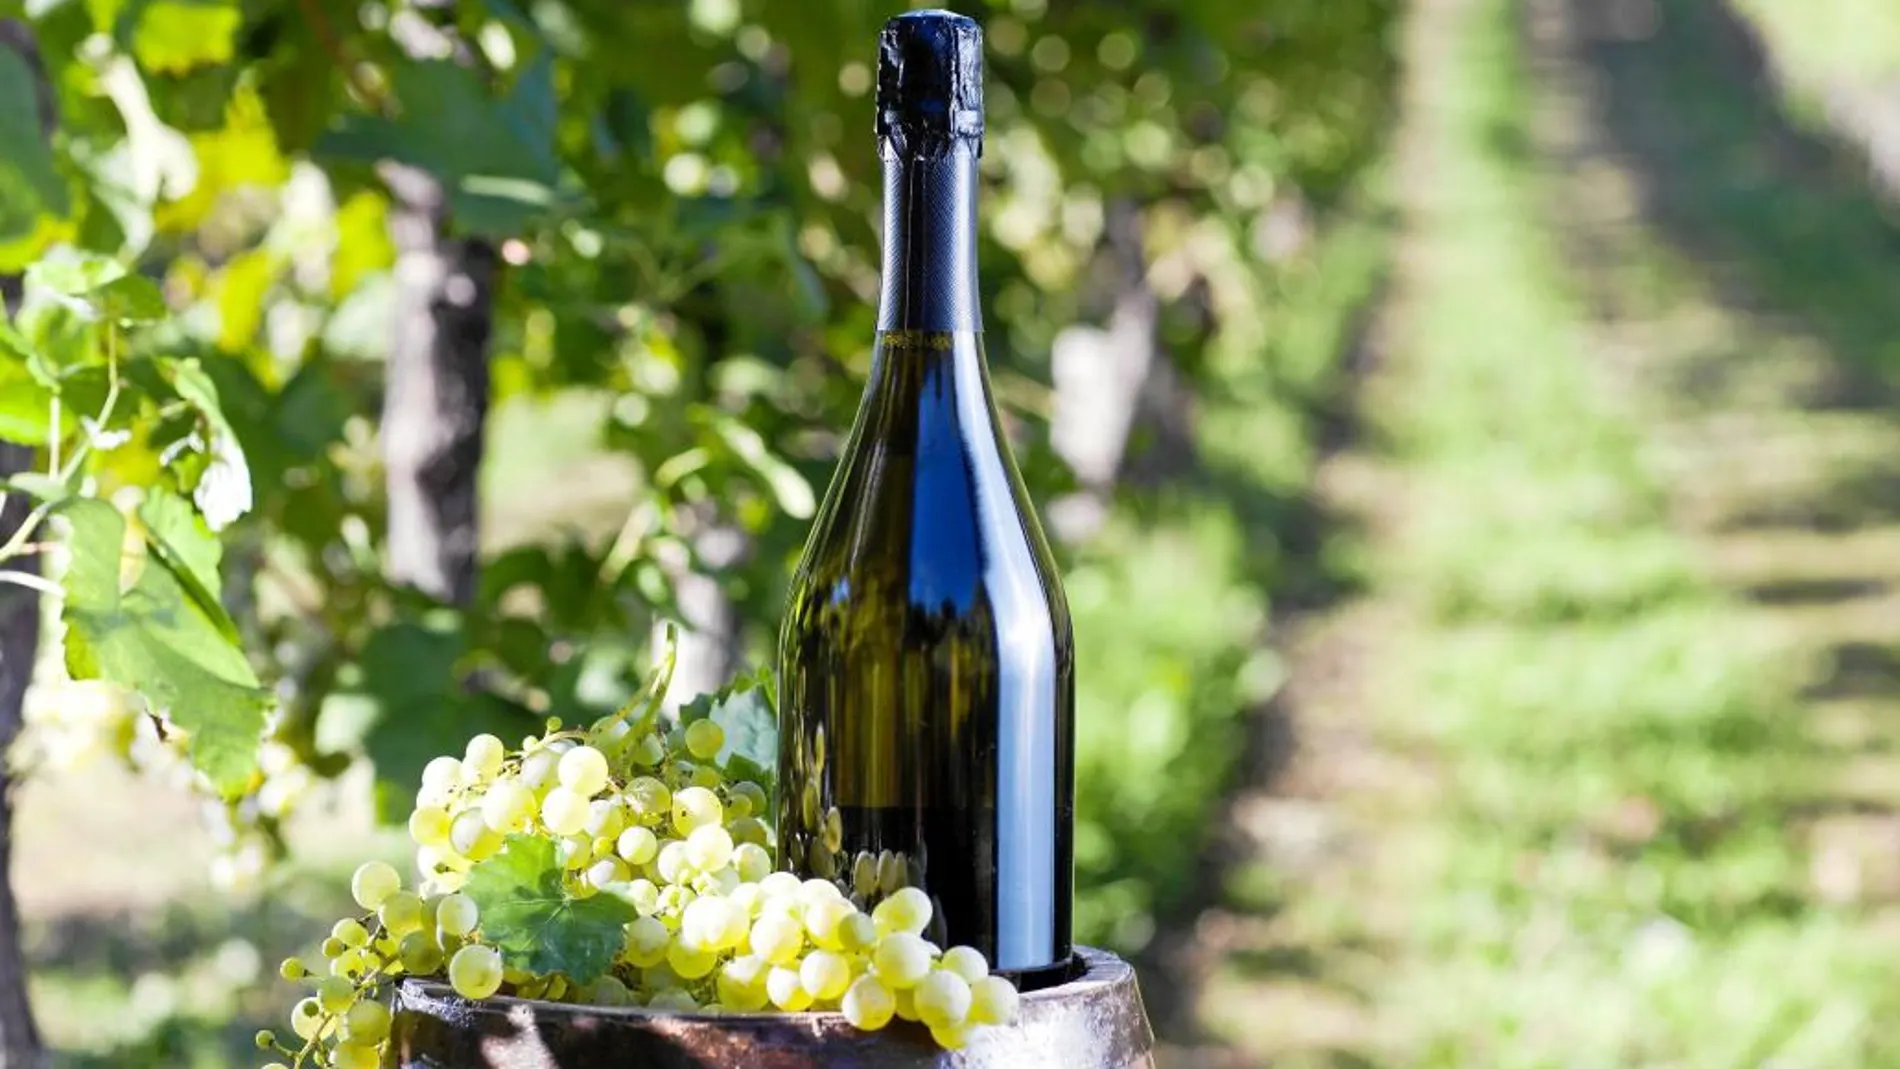 Las viñas existían en la región de Champagne desde los romanos